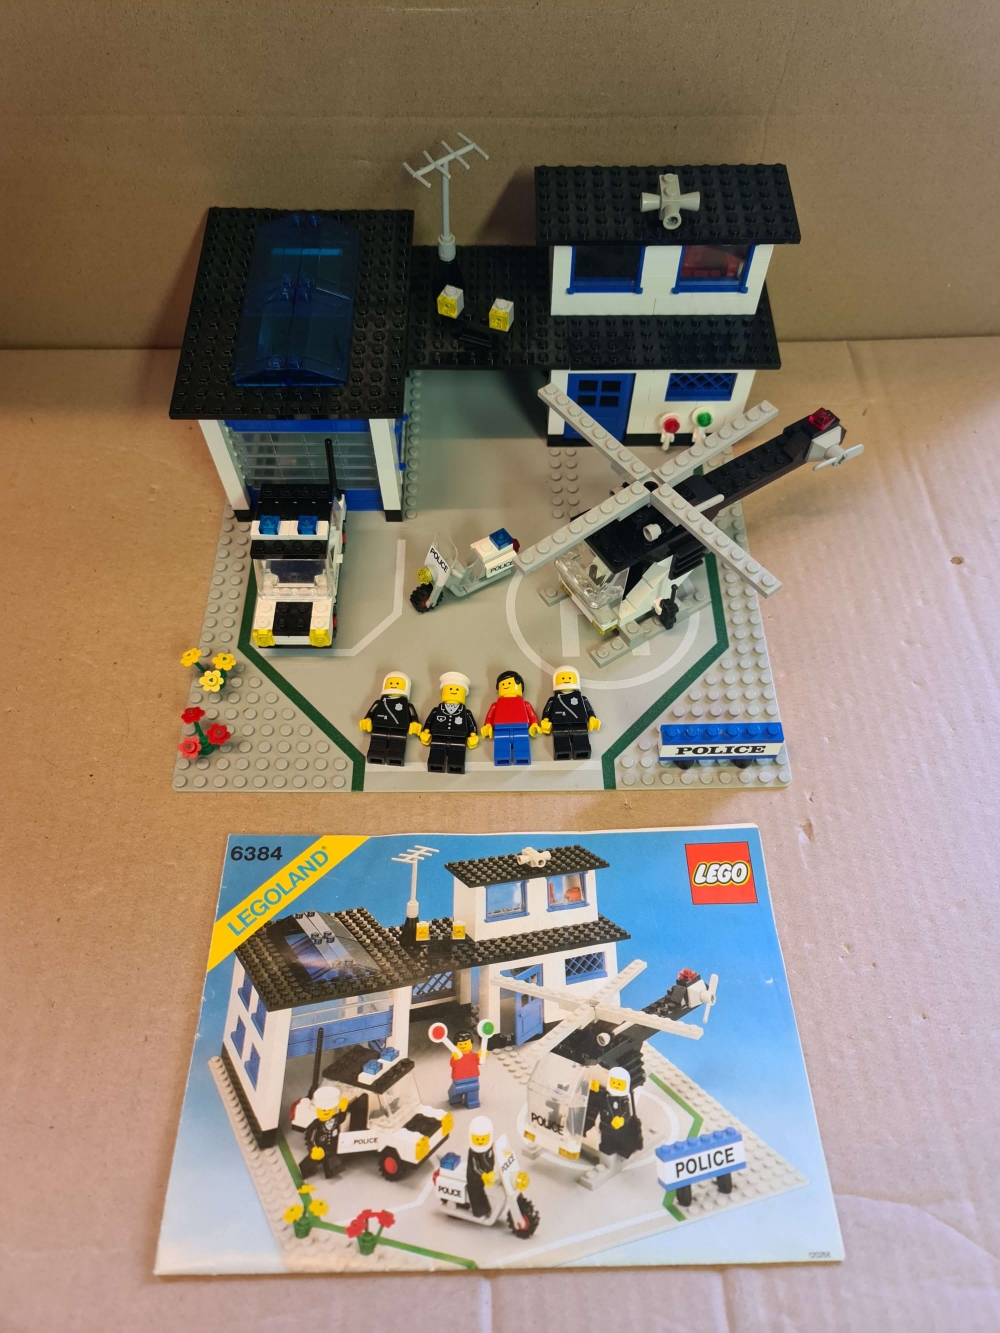 Sett 6384 fra Lego Classic Town serien.
Veldig fint sett.
Komplett med manual.